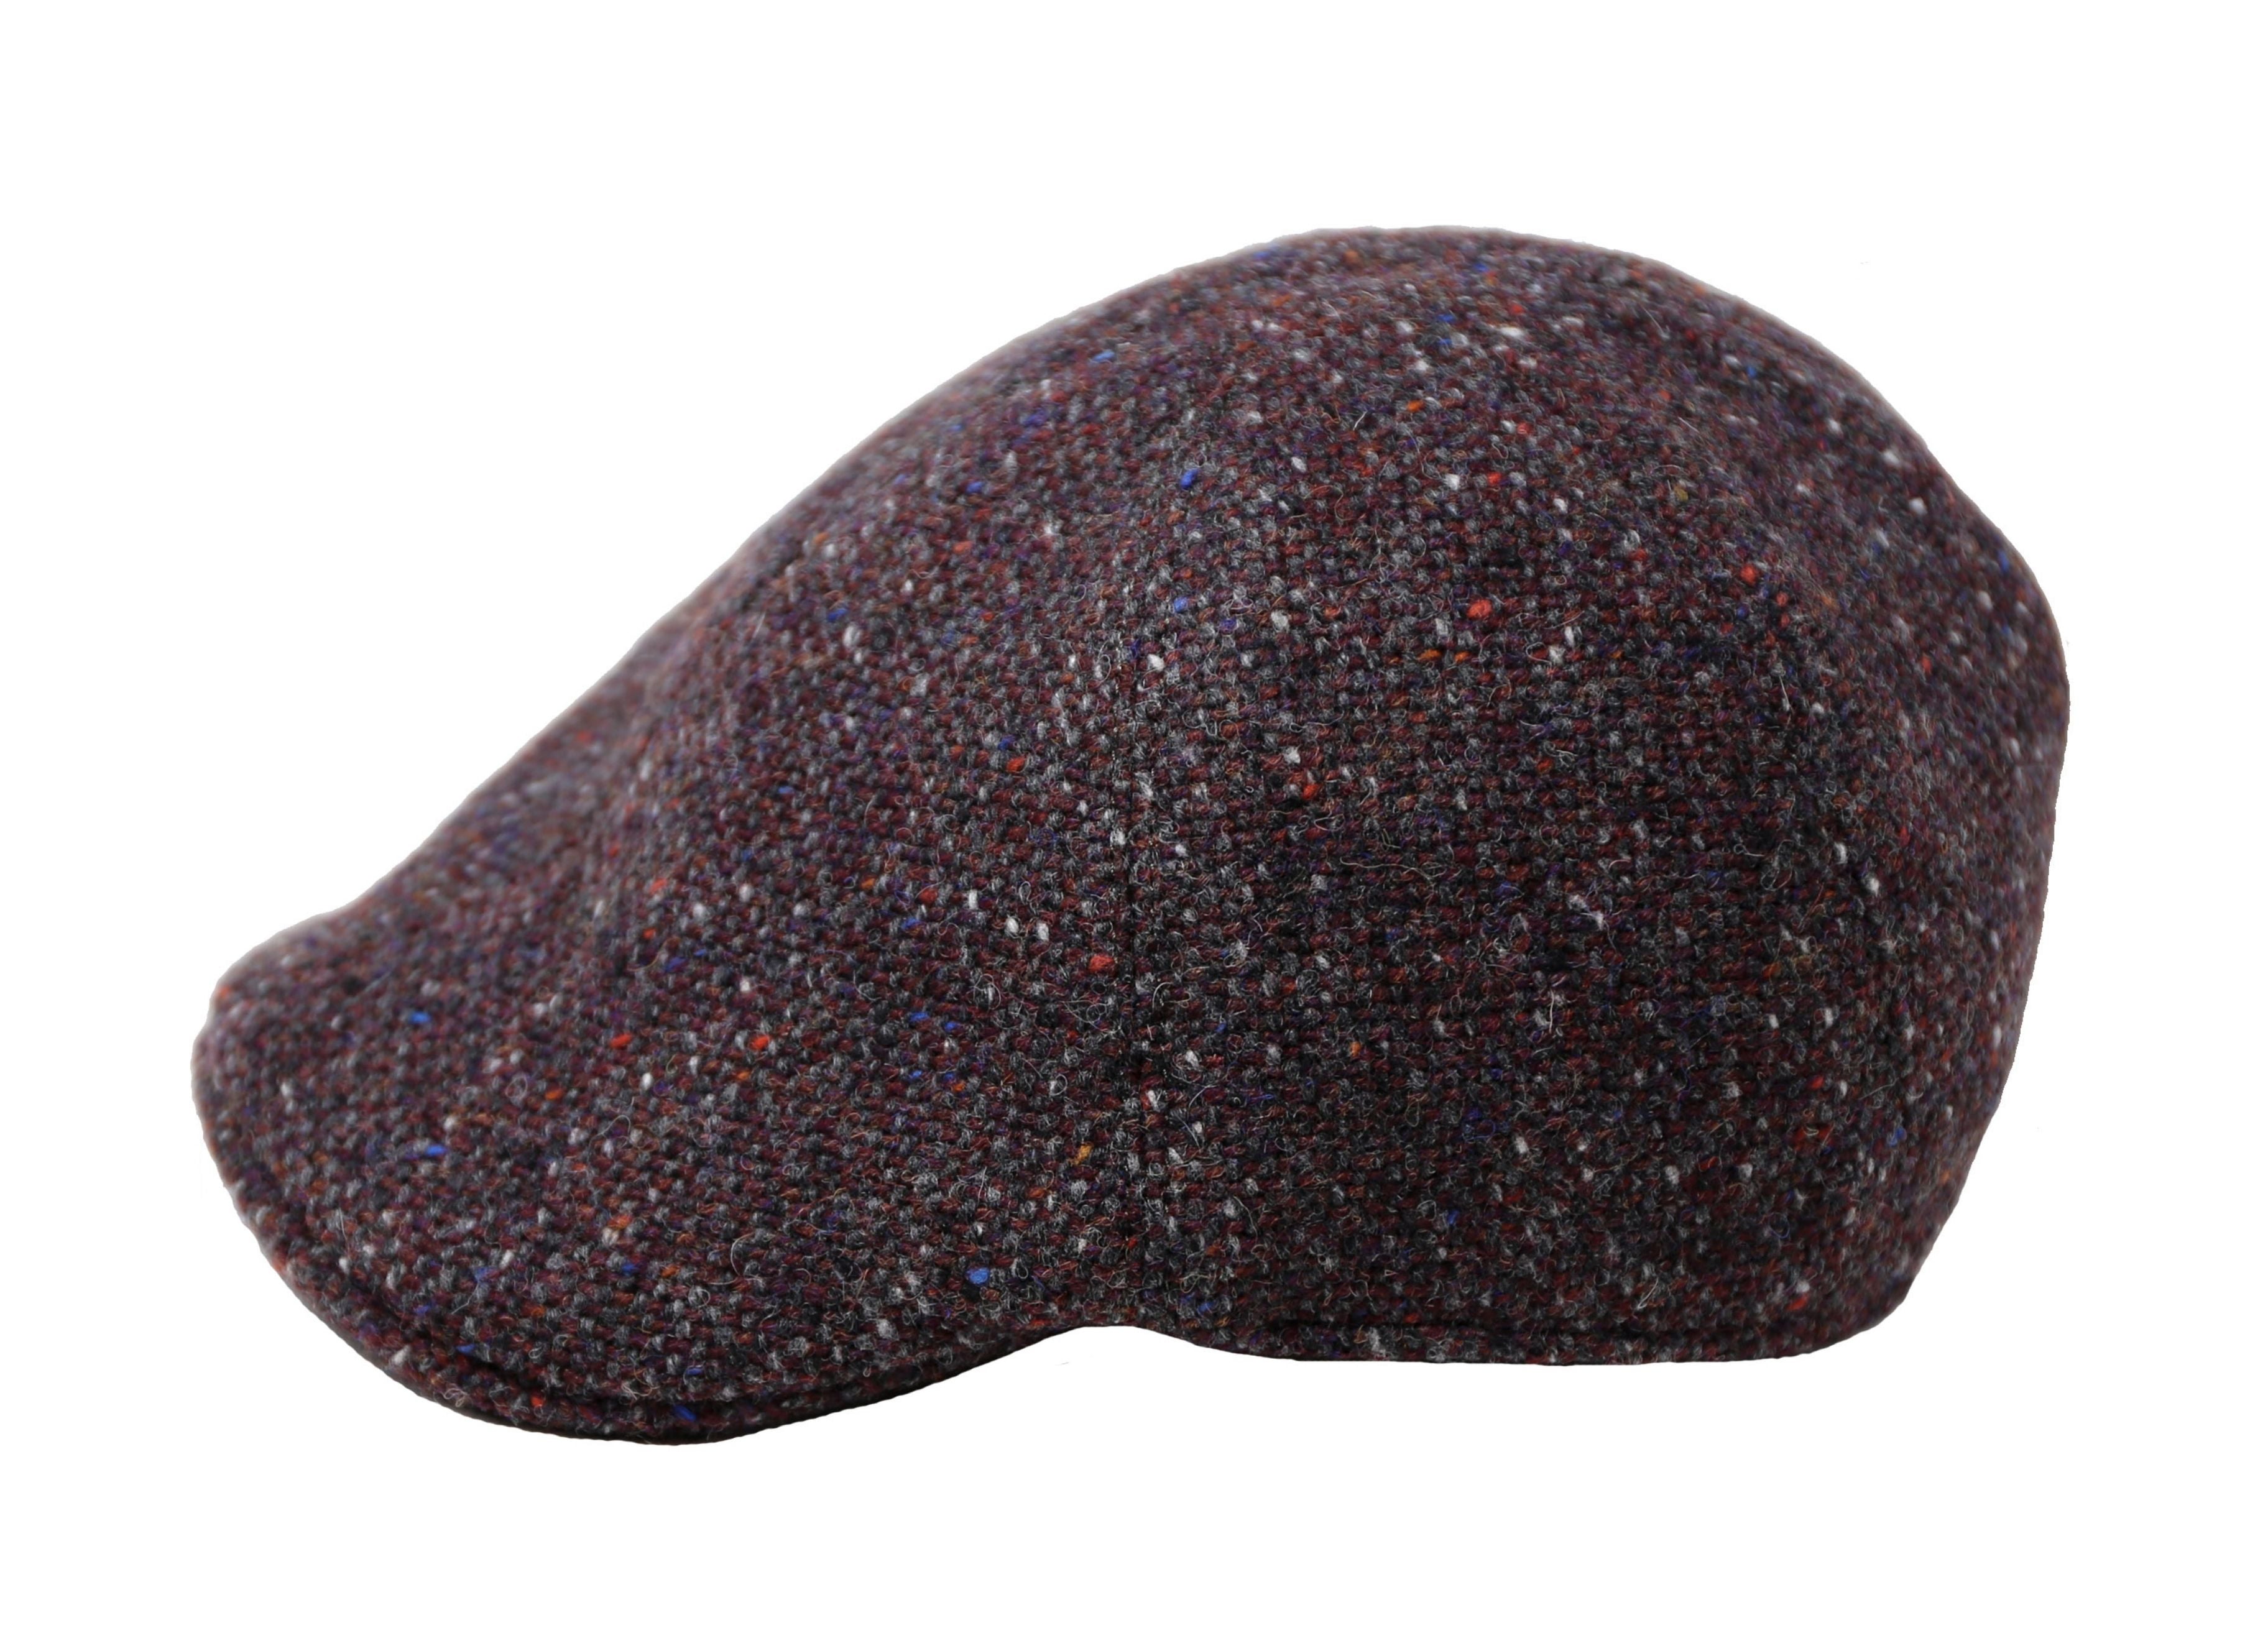 Hanna Hats Erin Cap Tweed Irish Tweed Maroon & Charcoal Salt and Pepper Colourful Flecks